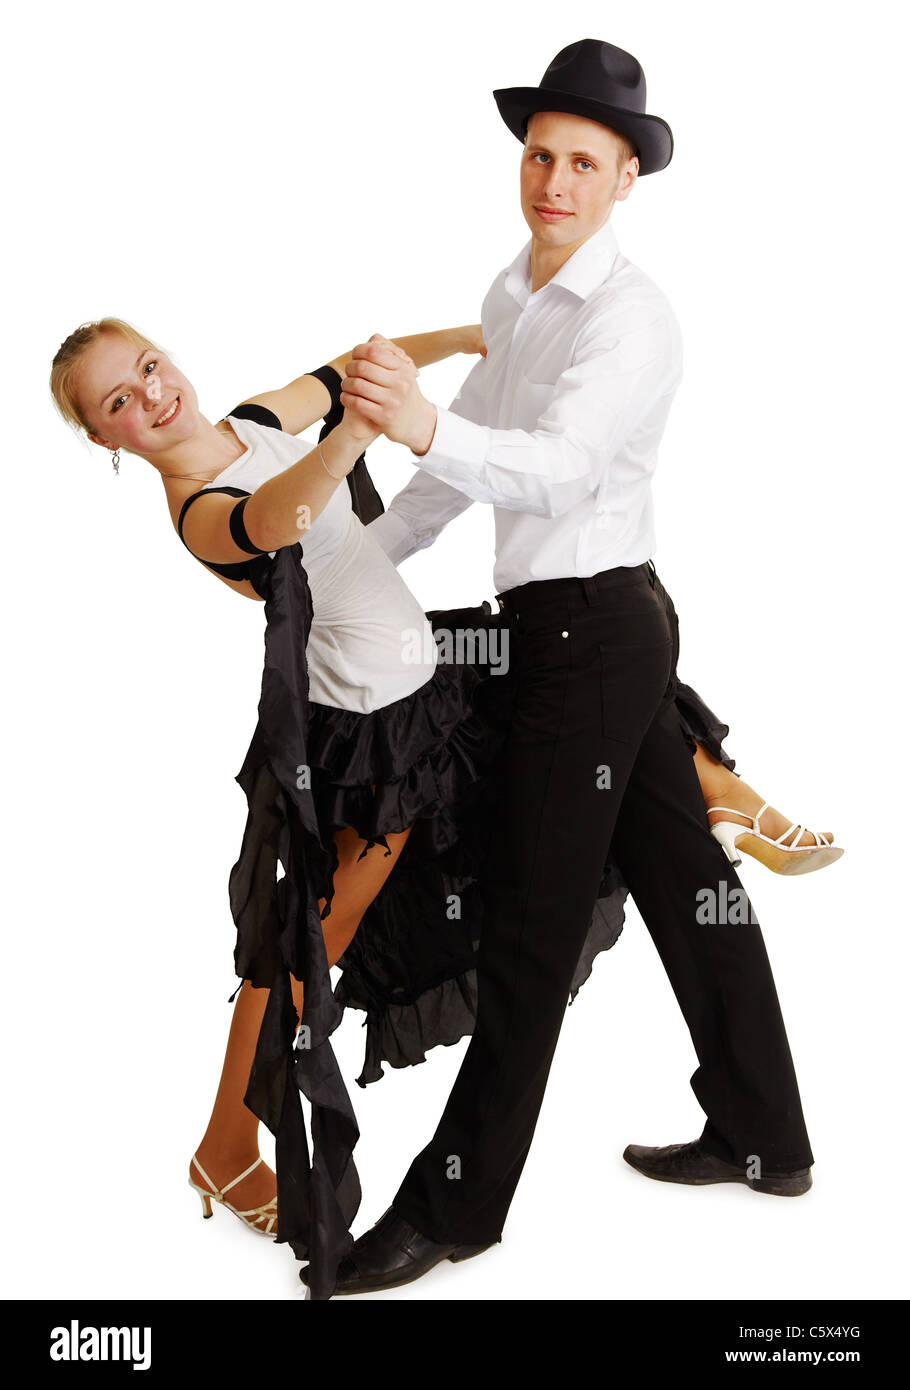 Dancing coppia giovane isolato su sfondo bianco Foto Stock